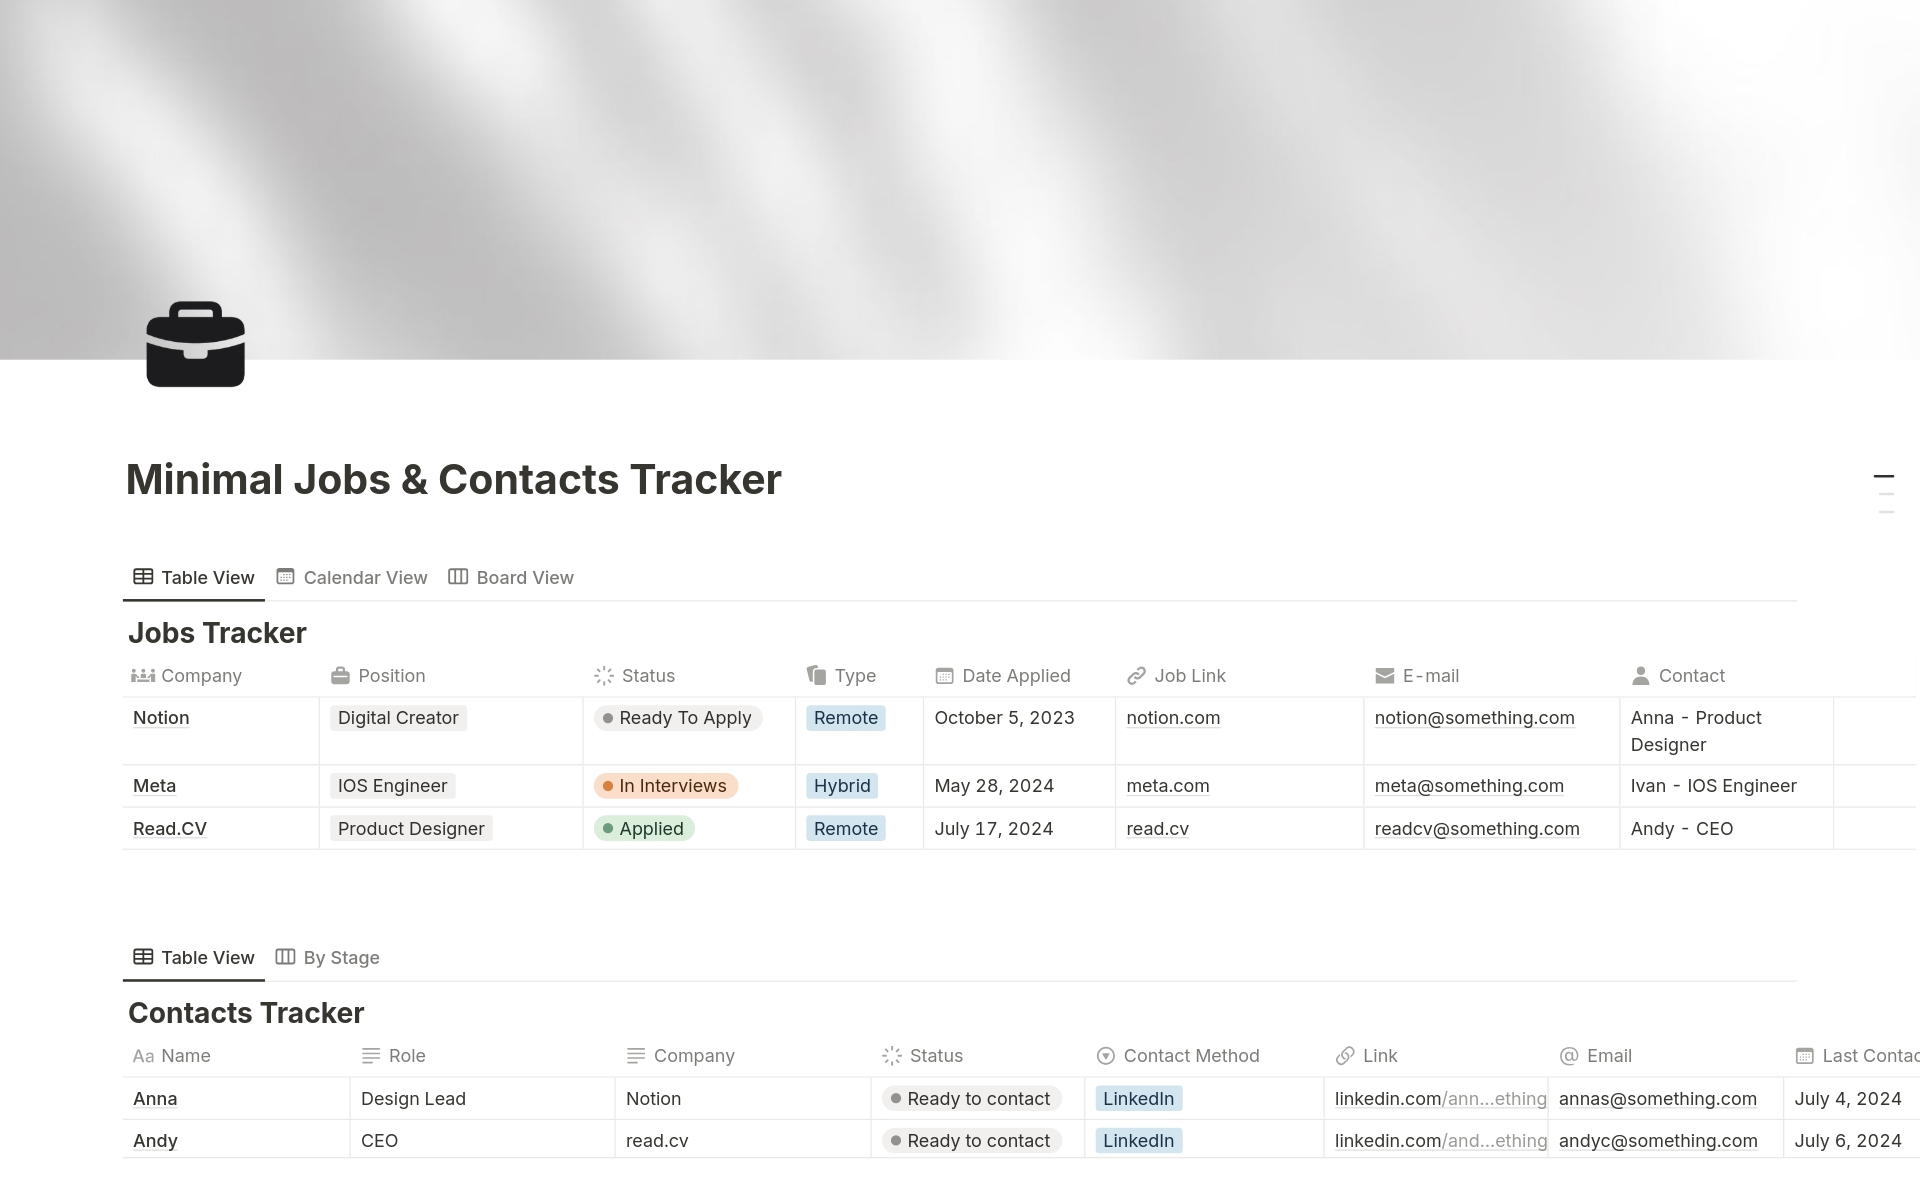 Vista previa de plantilla para Minimal Jobs & Contacts Tracker